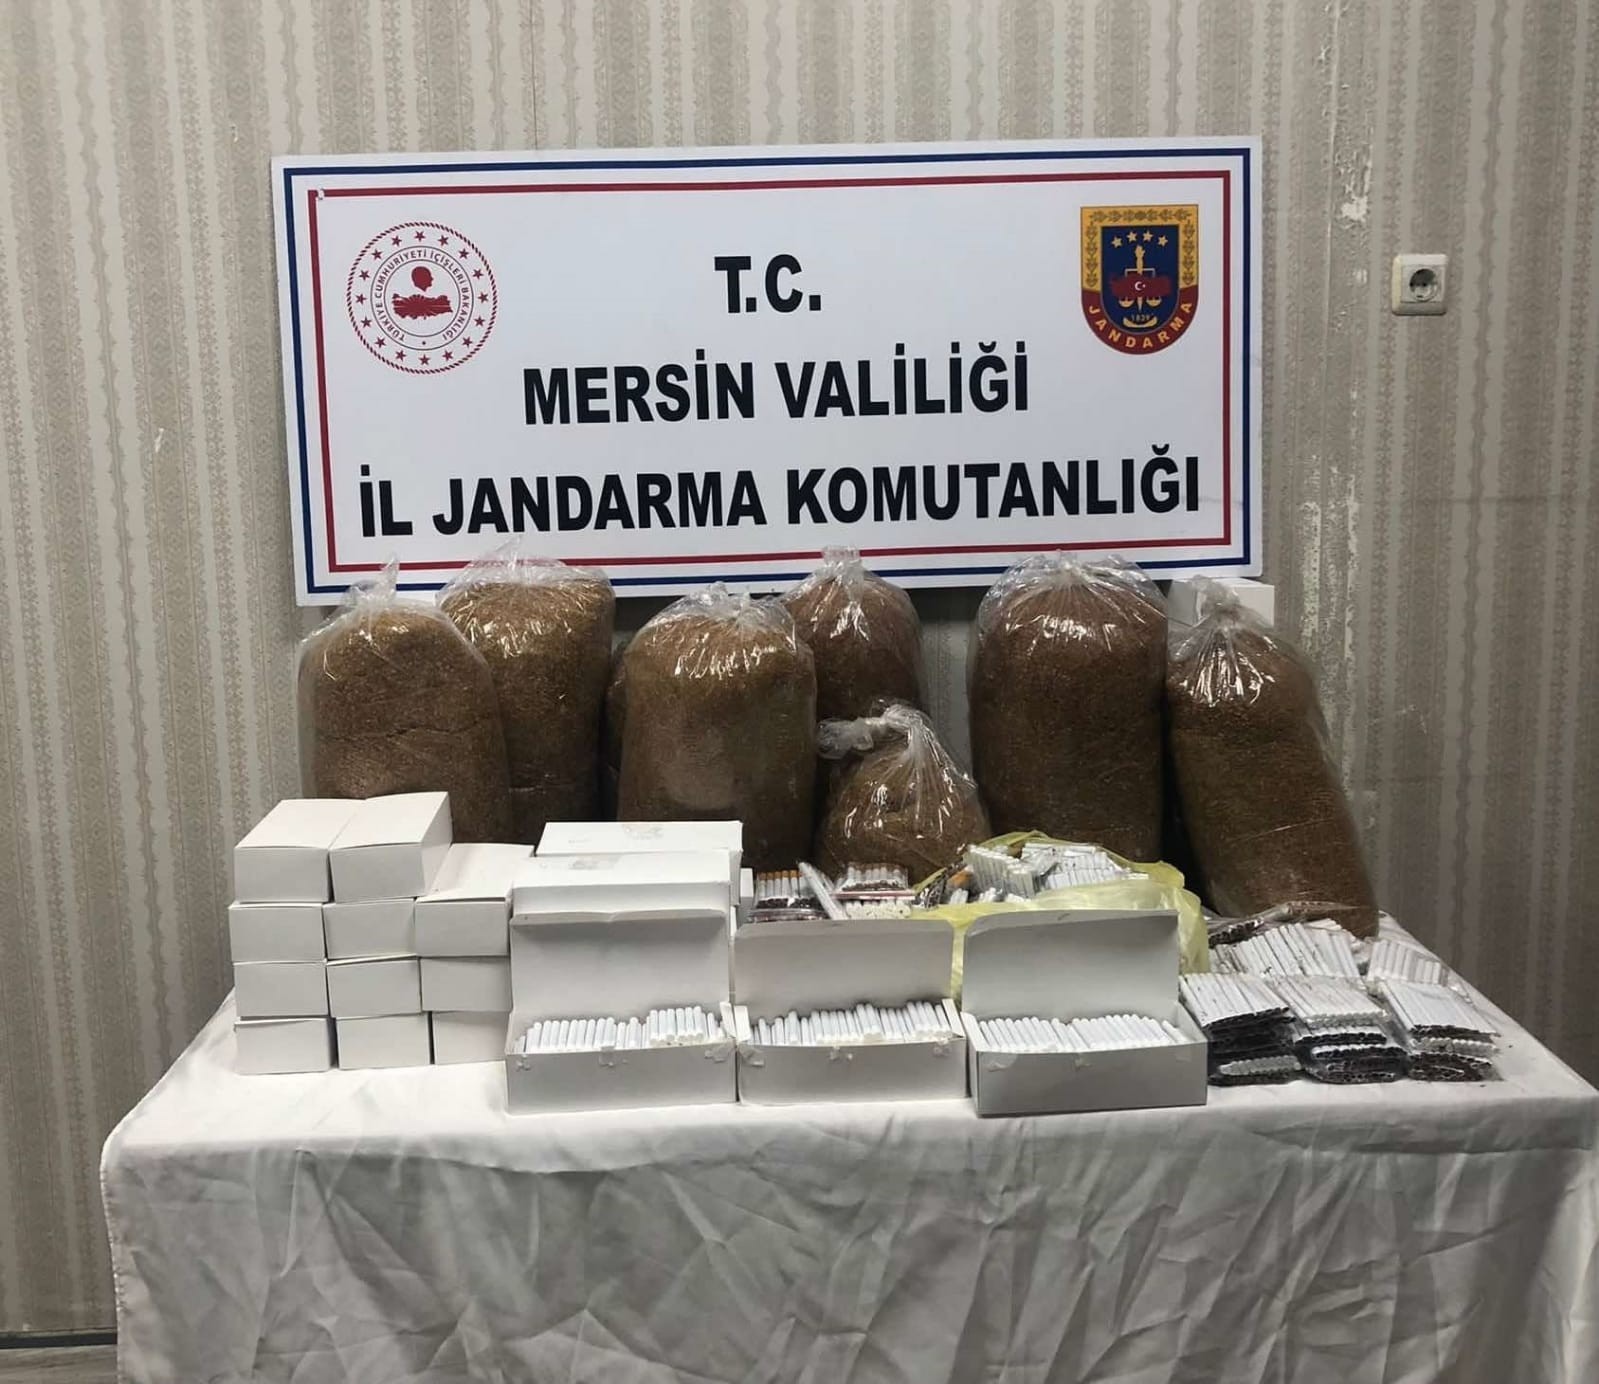 Mersin’de kaçak sigara satışı yapan 2 şüpheli gözaltına alındı